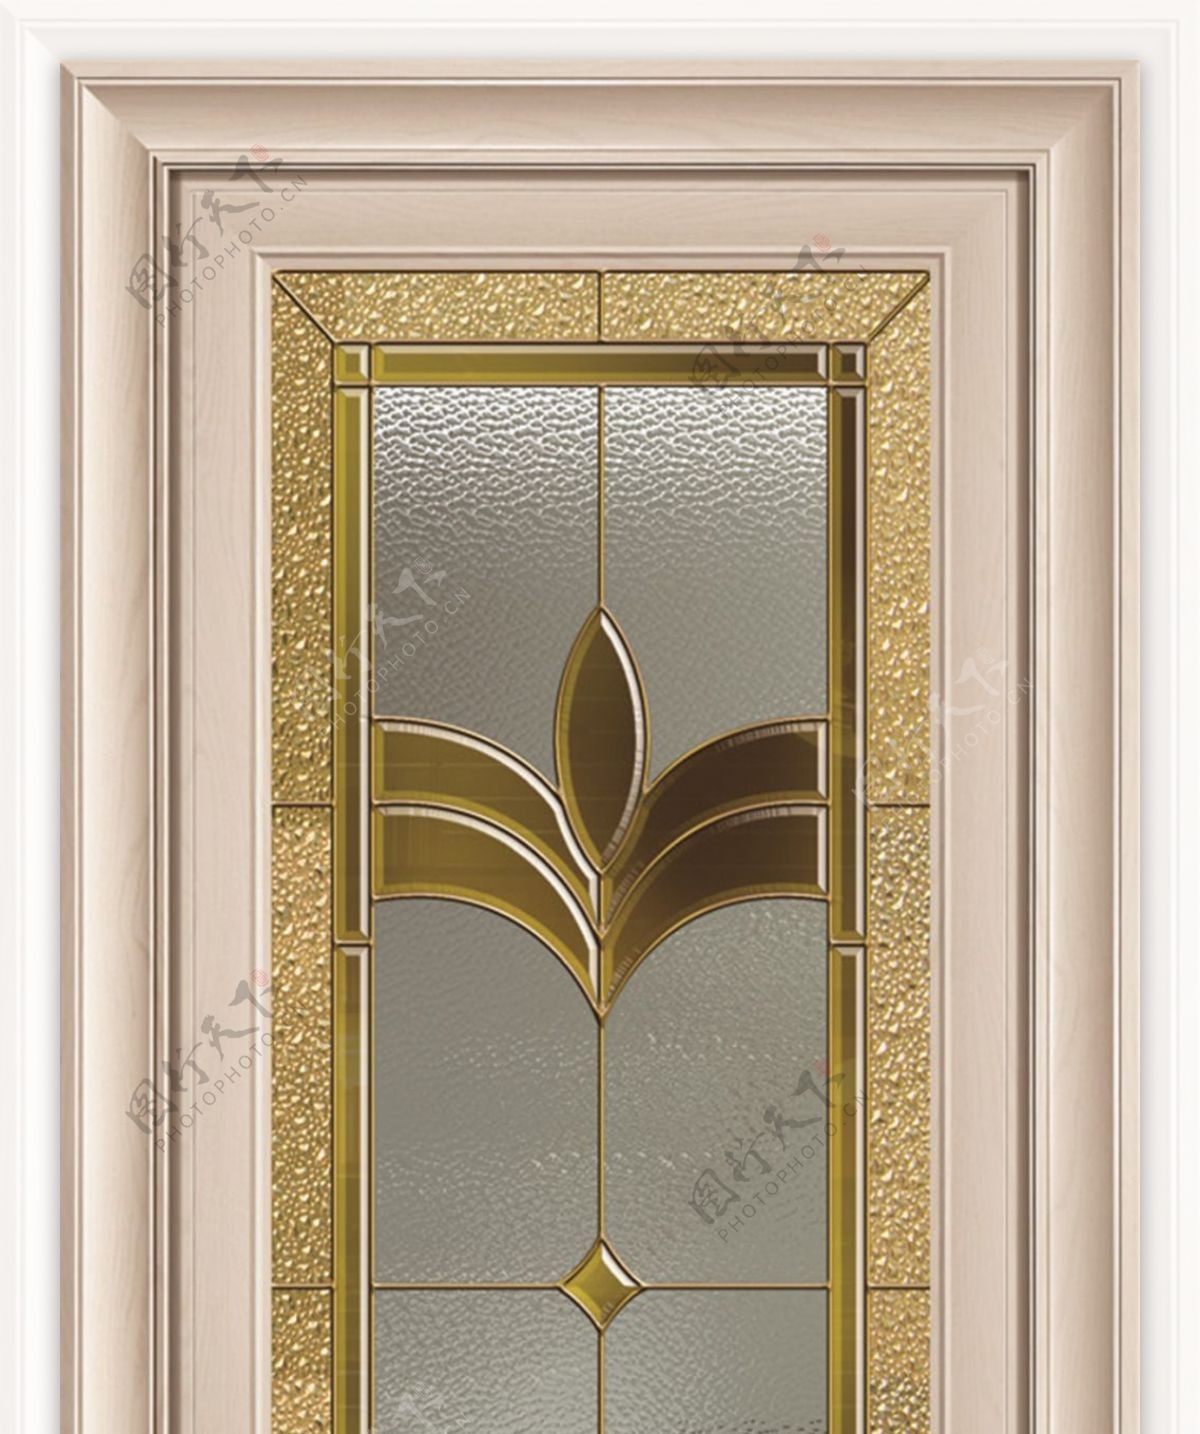 铜条镶嵌工艺玻璃铝合金平开门效果图